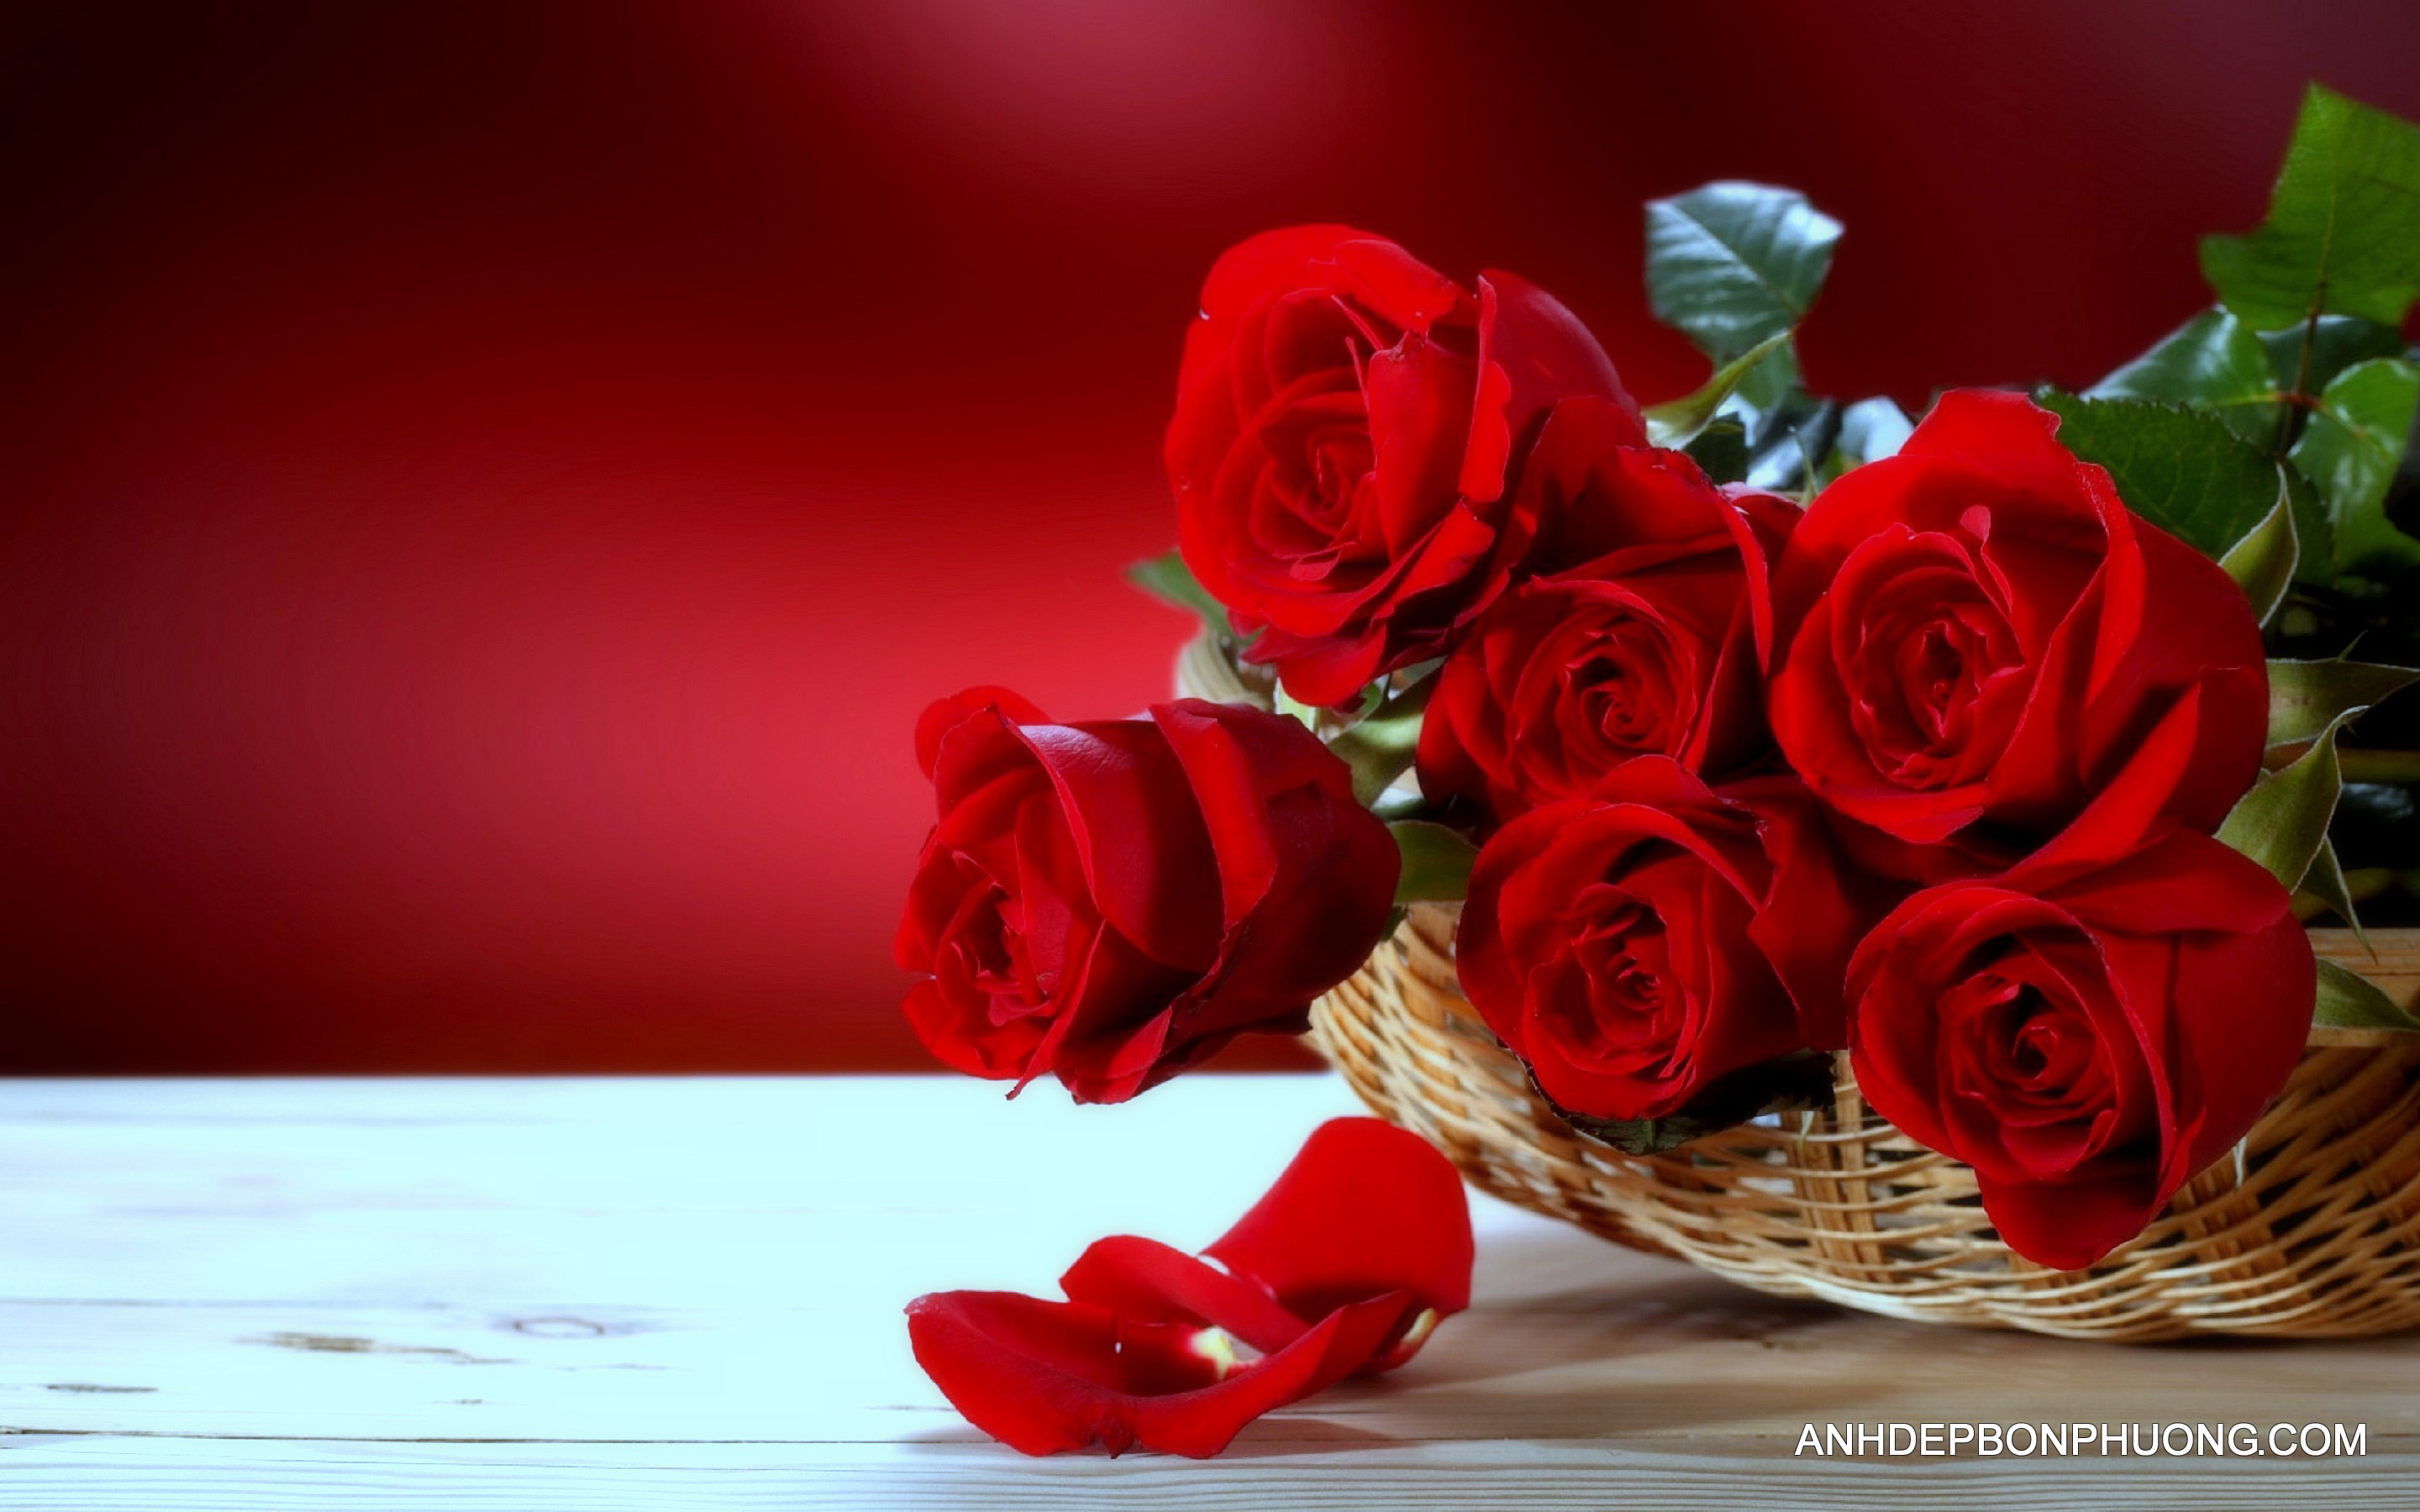 hinh-anh-hoa-hong-mau-hong-dep-lang-man-beautiful-red-roses-bouquet-wallpaper